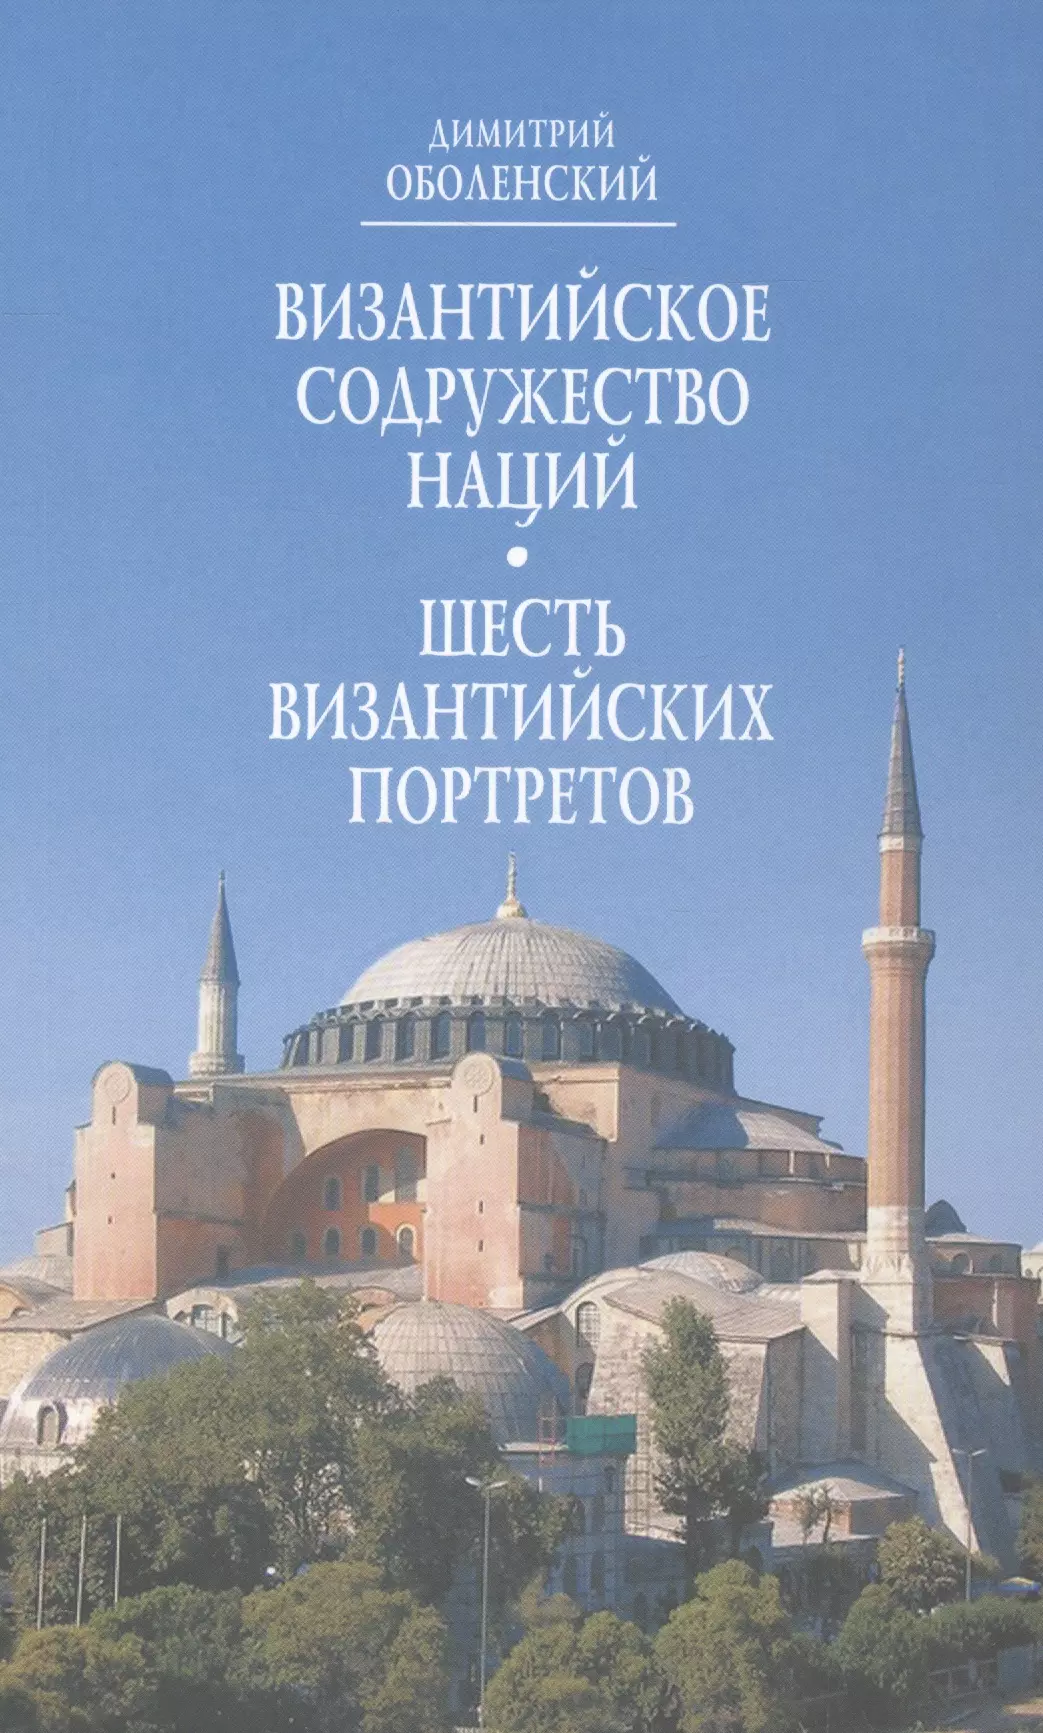  - Византийское Содружество Наций Шесть византийских портретов (Оболенский)